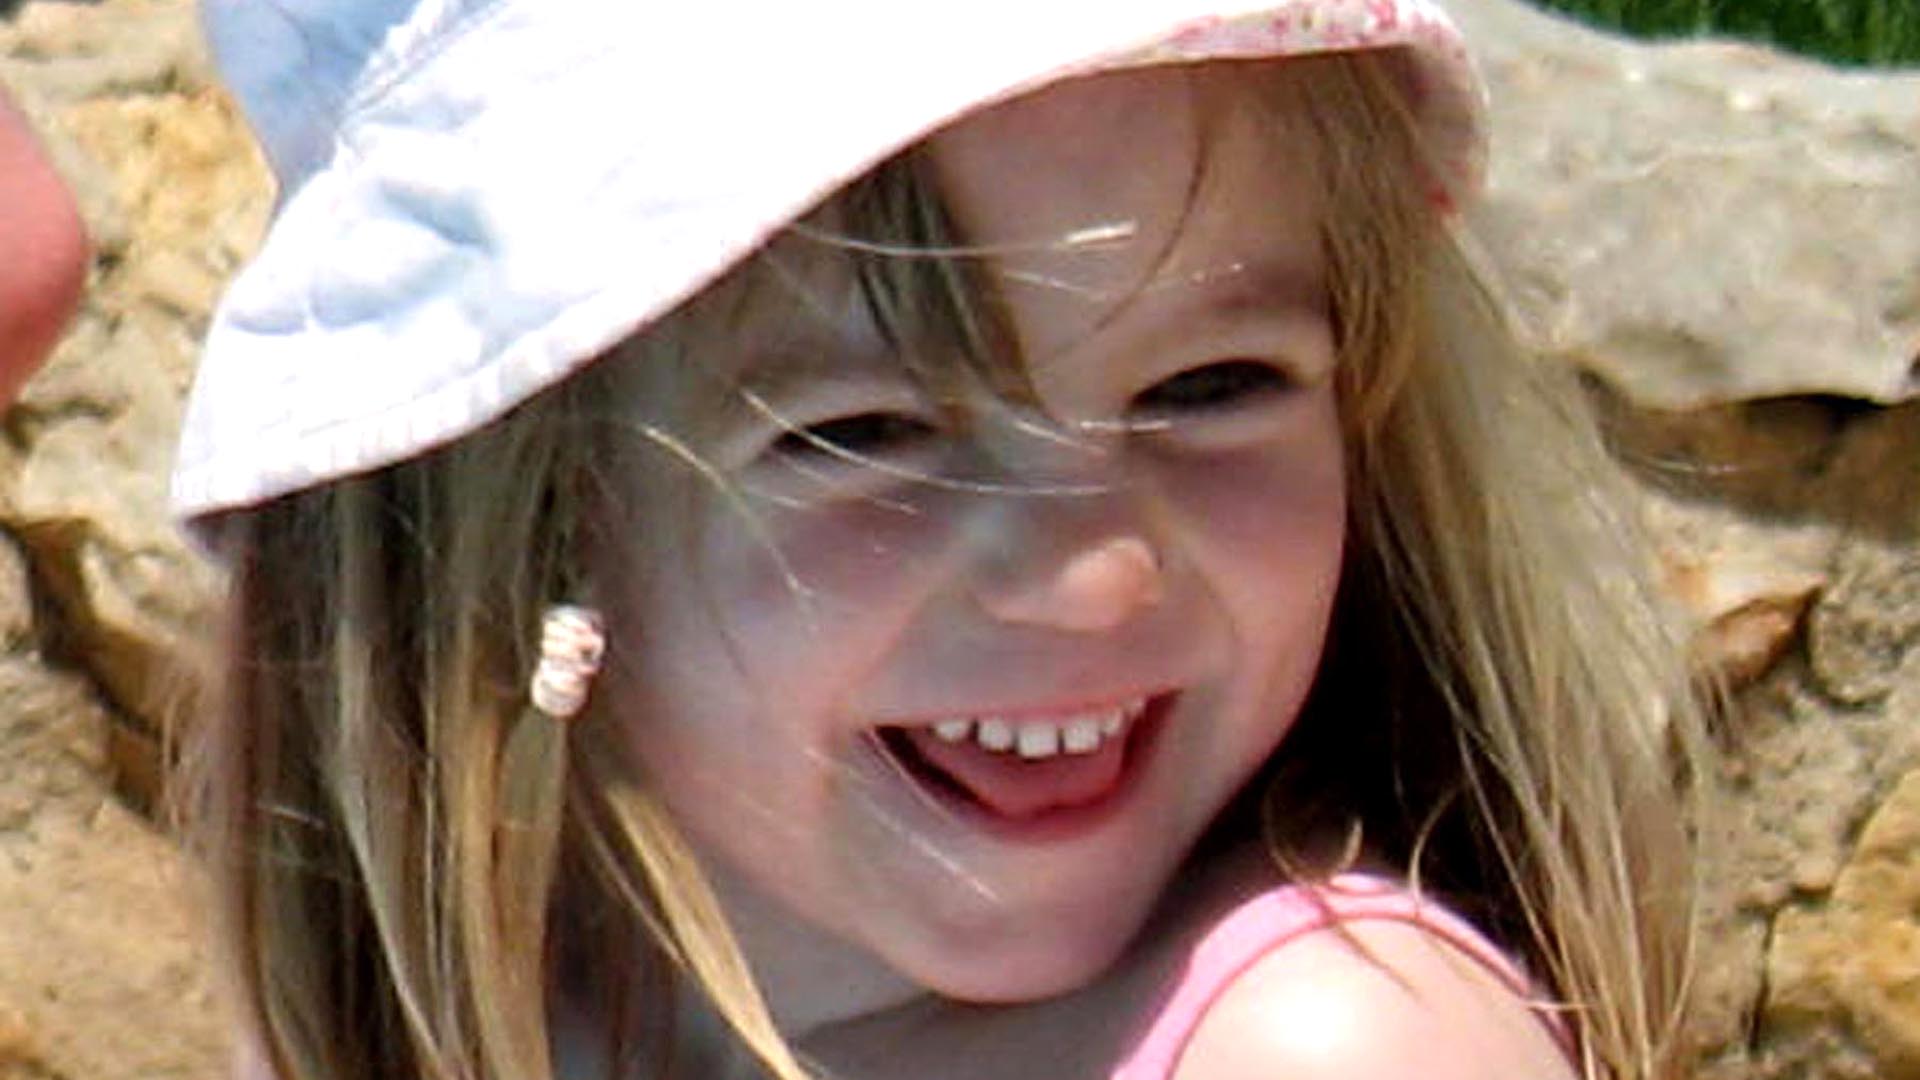 A 16 años de la desaparición de Maddie McCann: pistas falsas, sospechas de pedofilia y su última foto